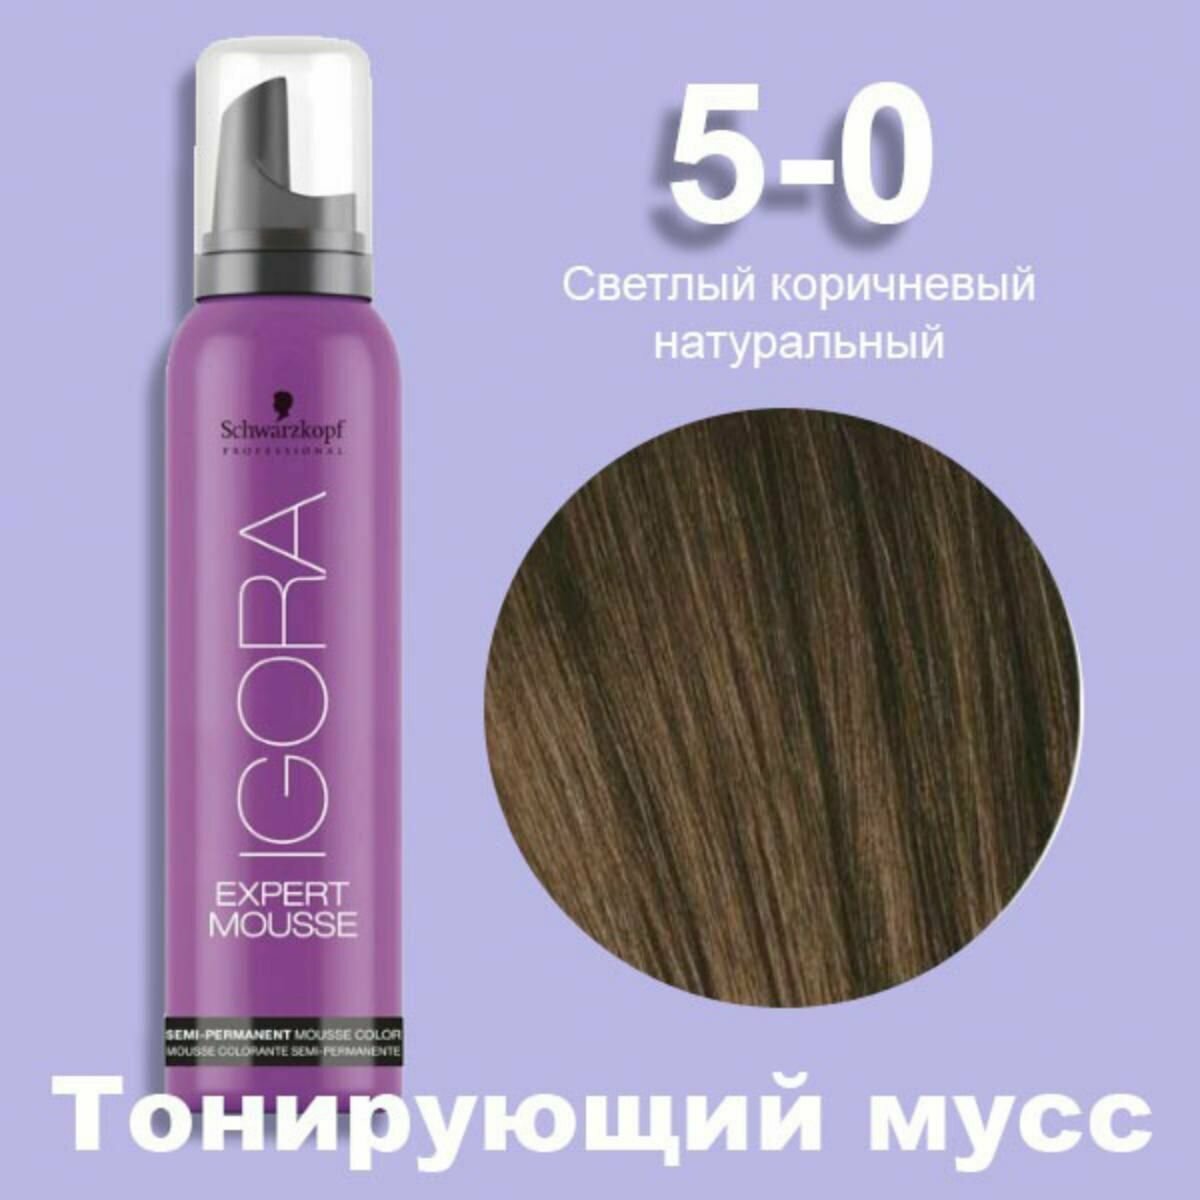 Schwarzkopf Igora Expert Mousse 5-0 Светлый коричневый натуральный Тонирующий мусс для волос 100 мл